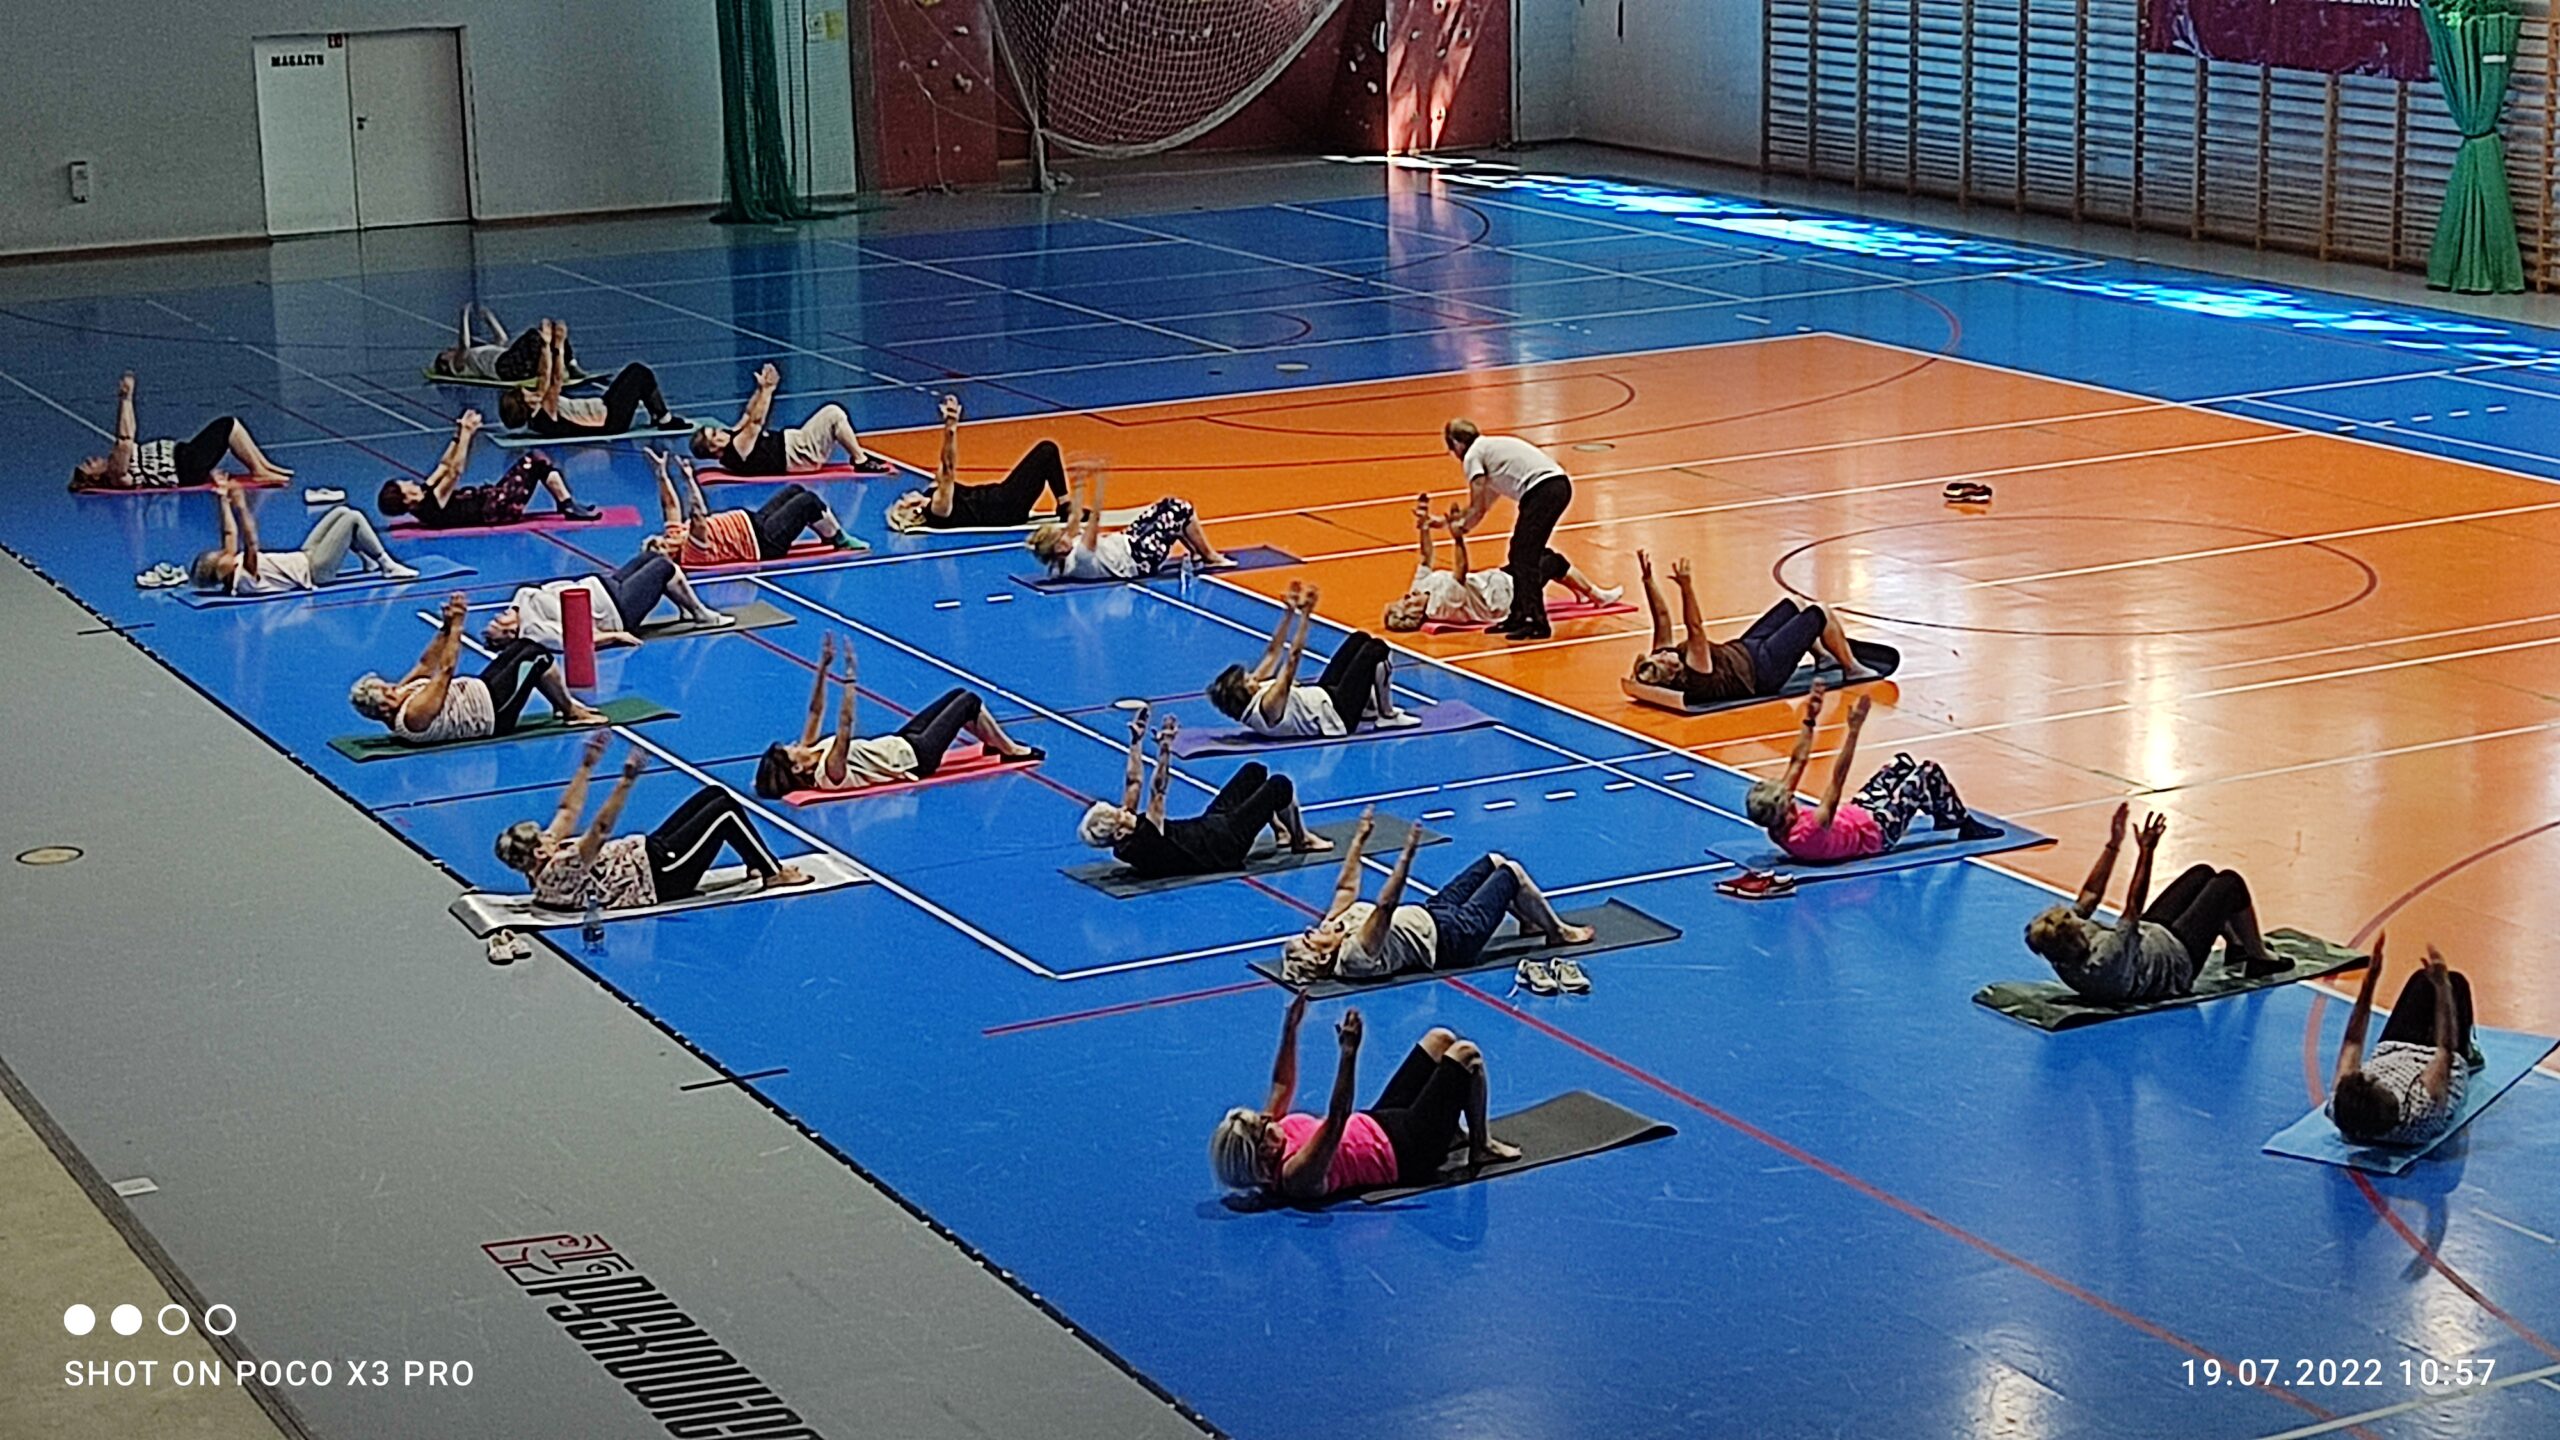 Zdjęcie z sekcji gimnastyka dla seniorów-trening funkcjonalny